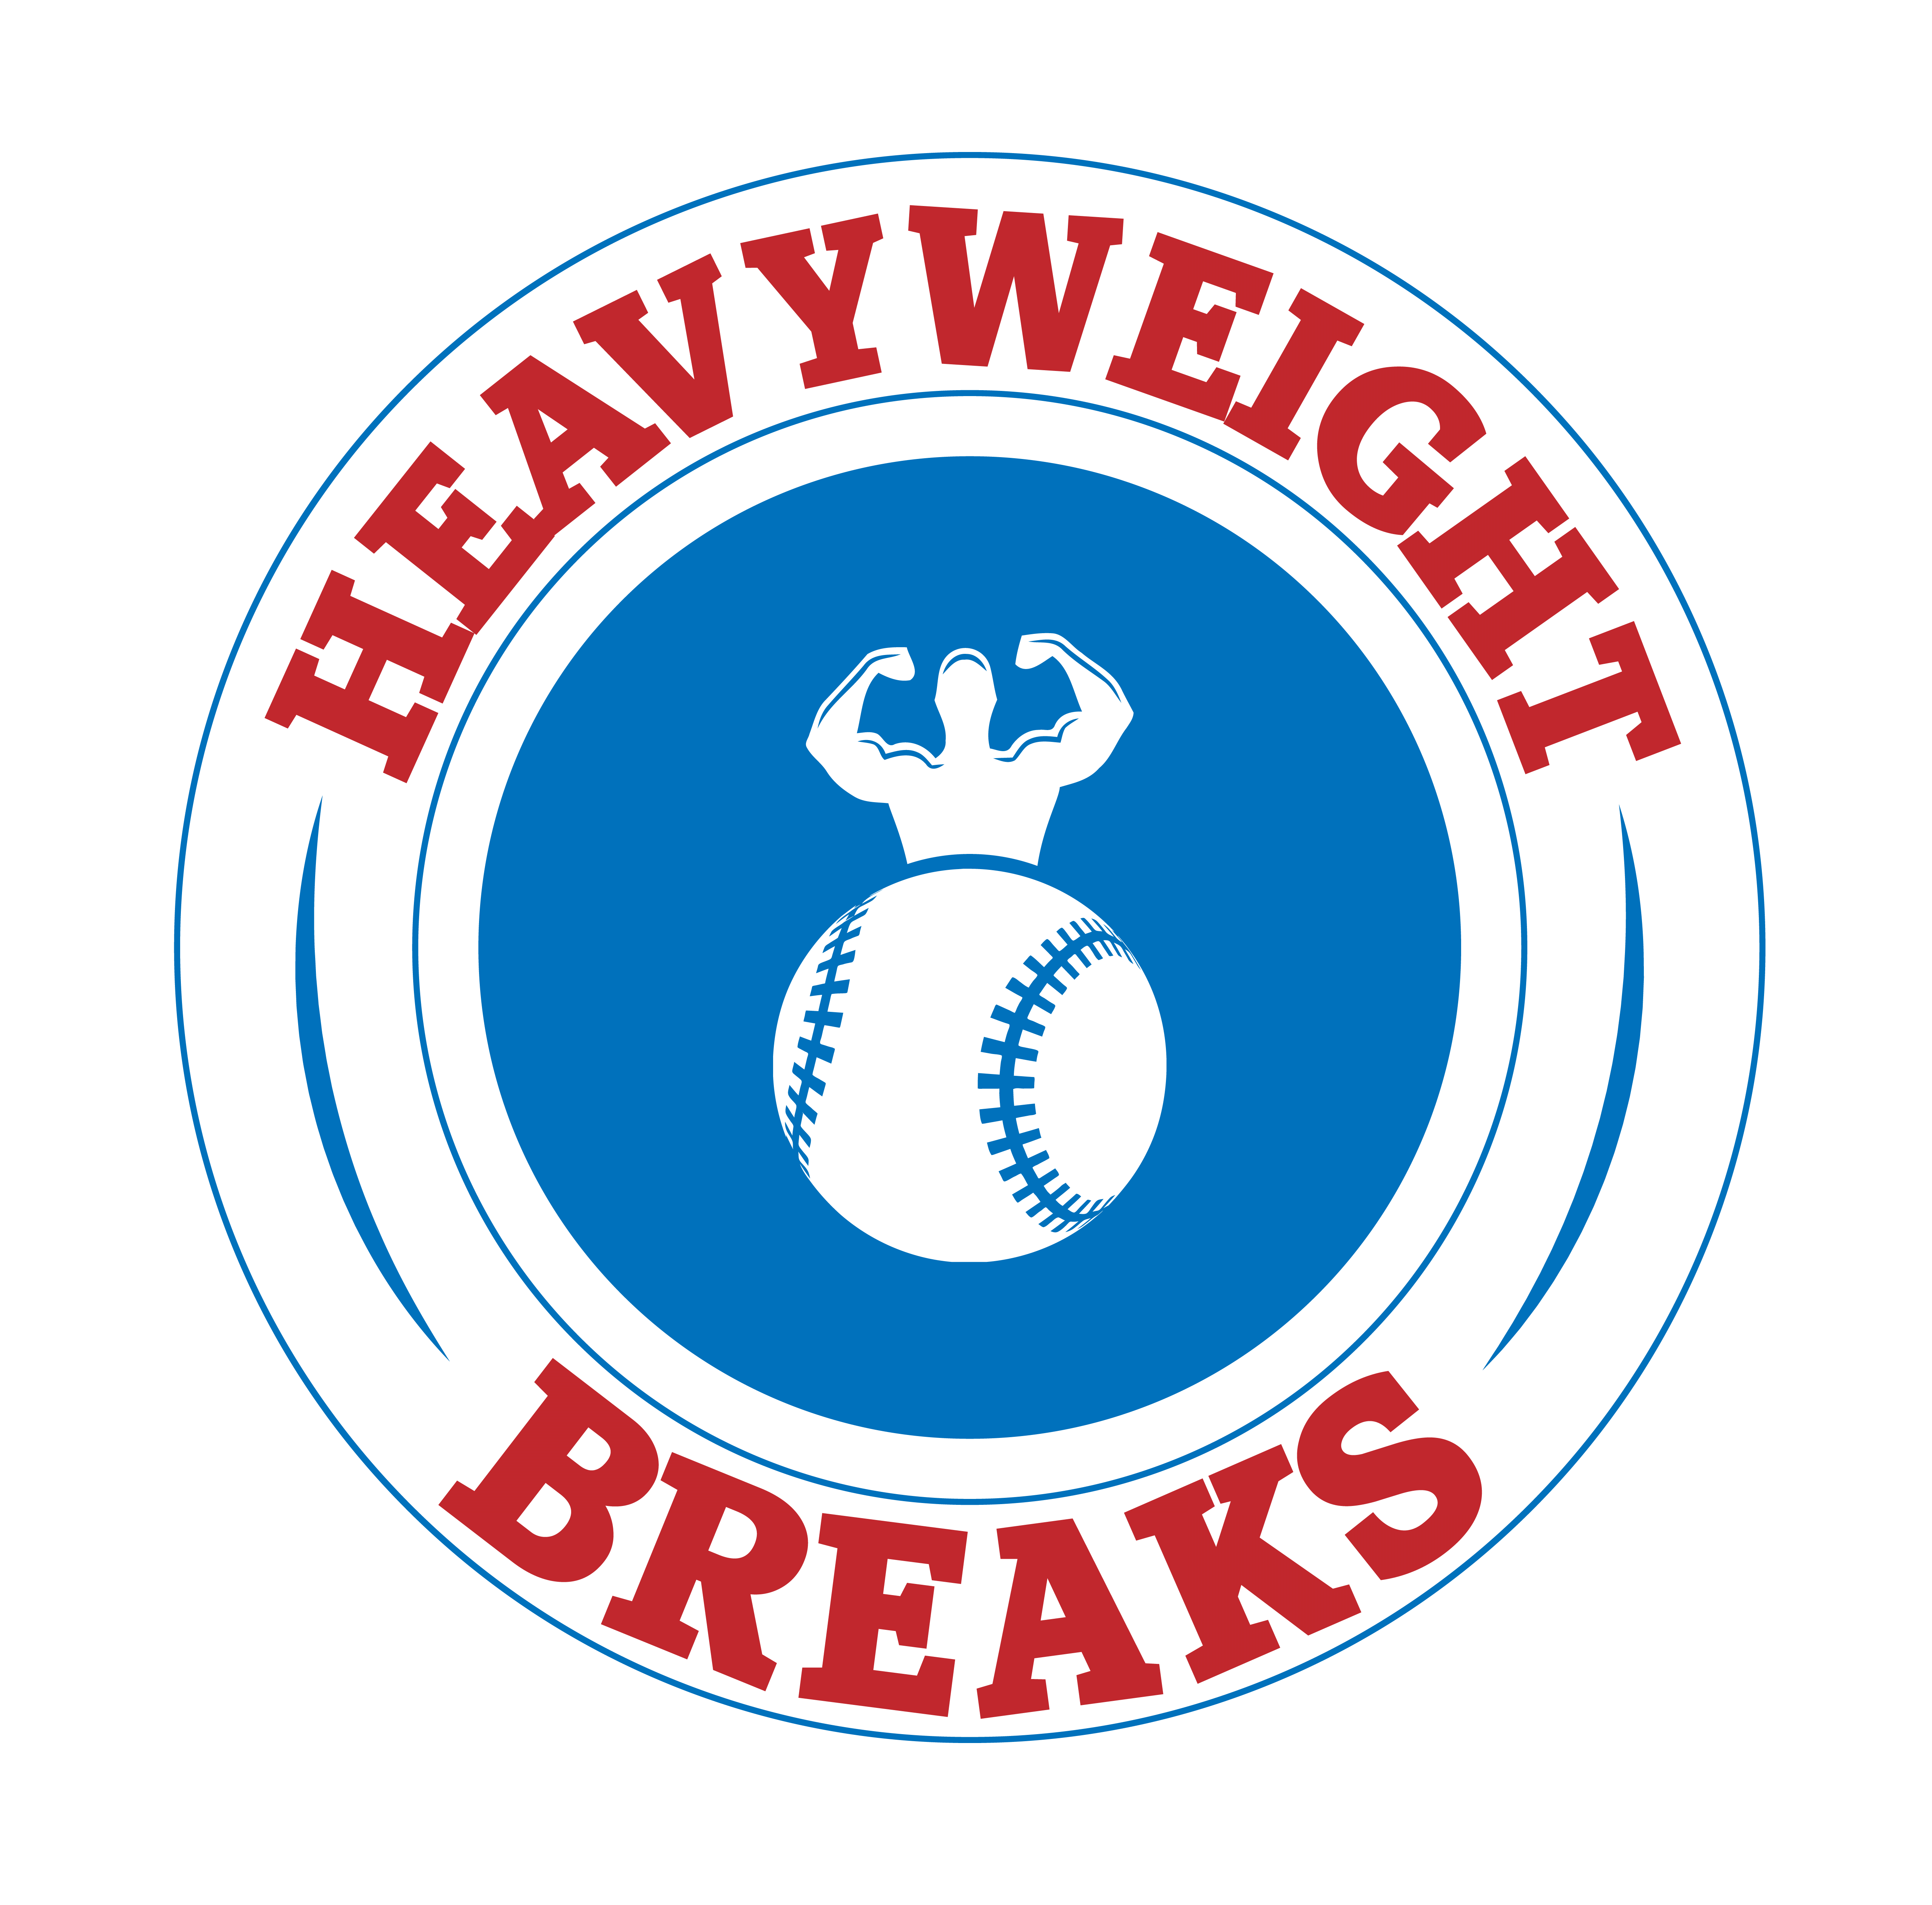 Heavyweight Breaks